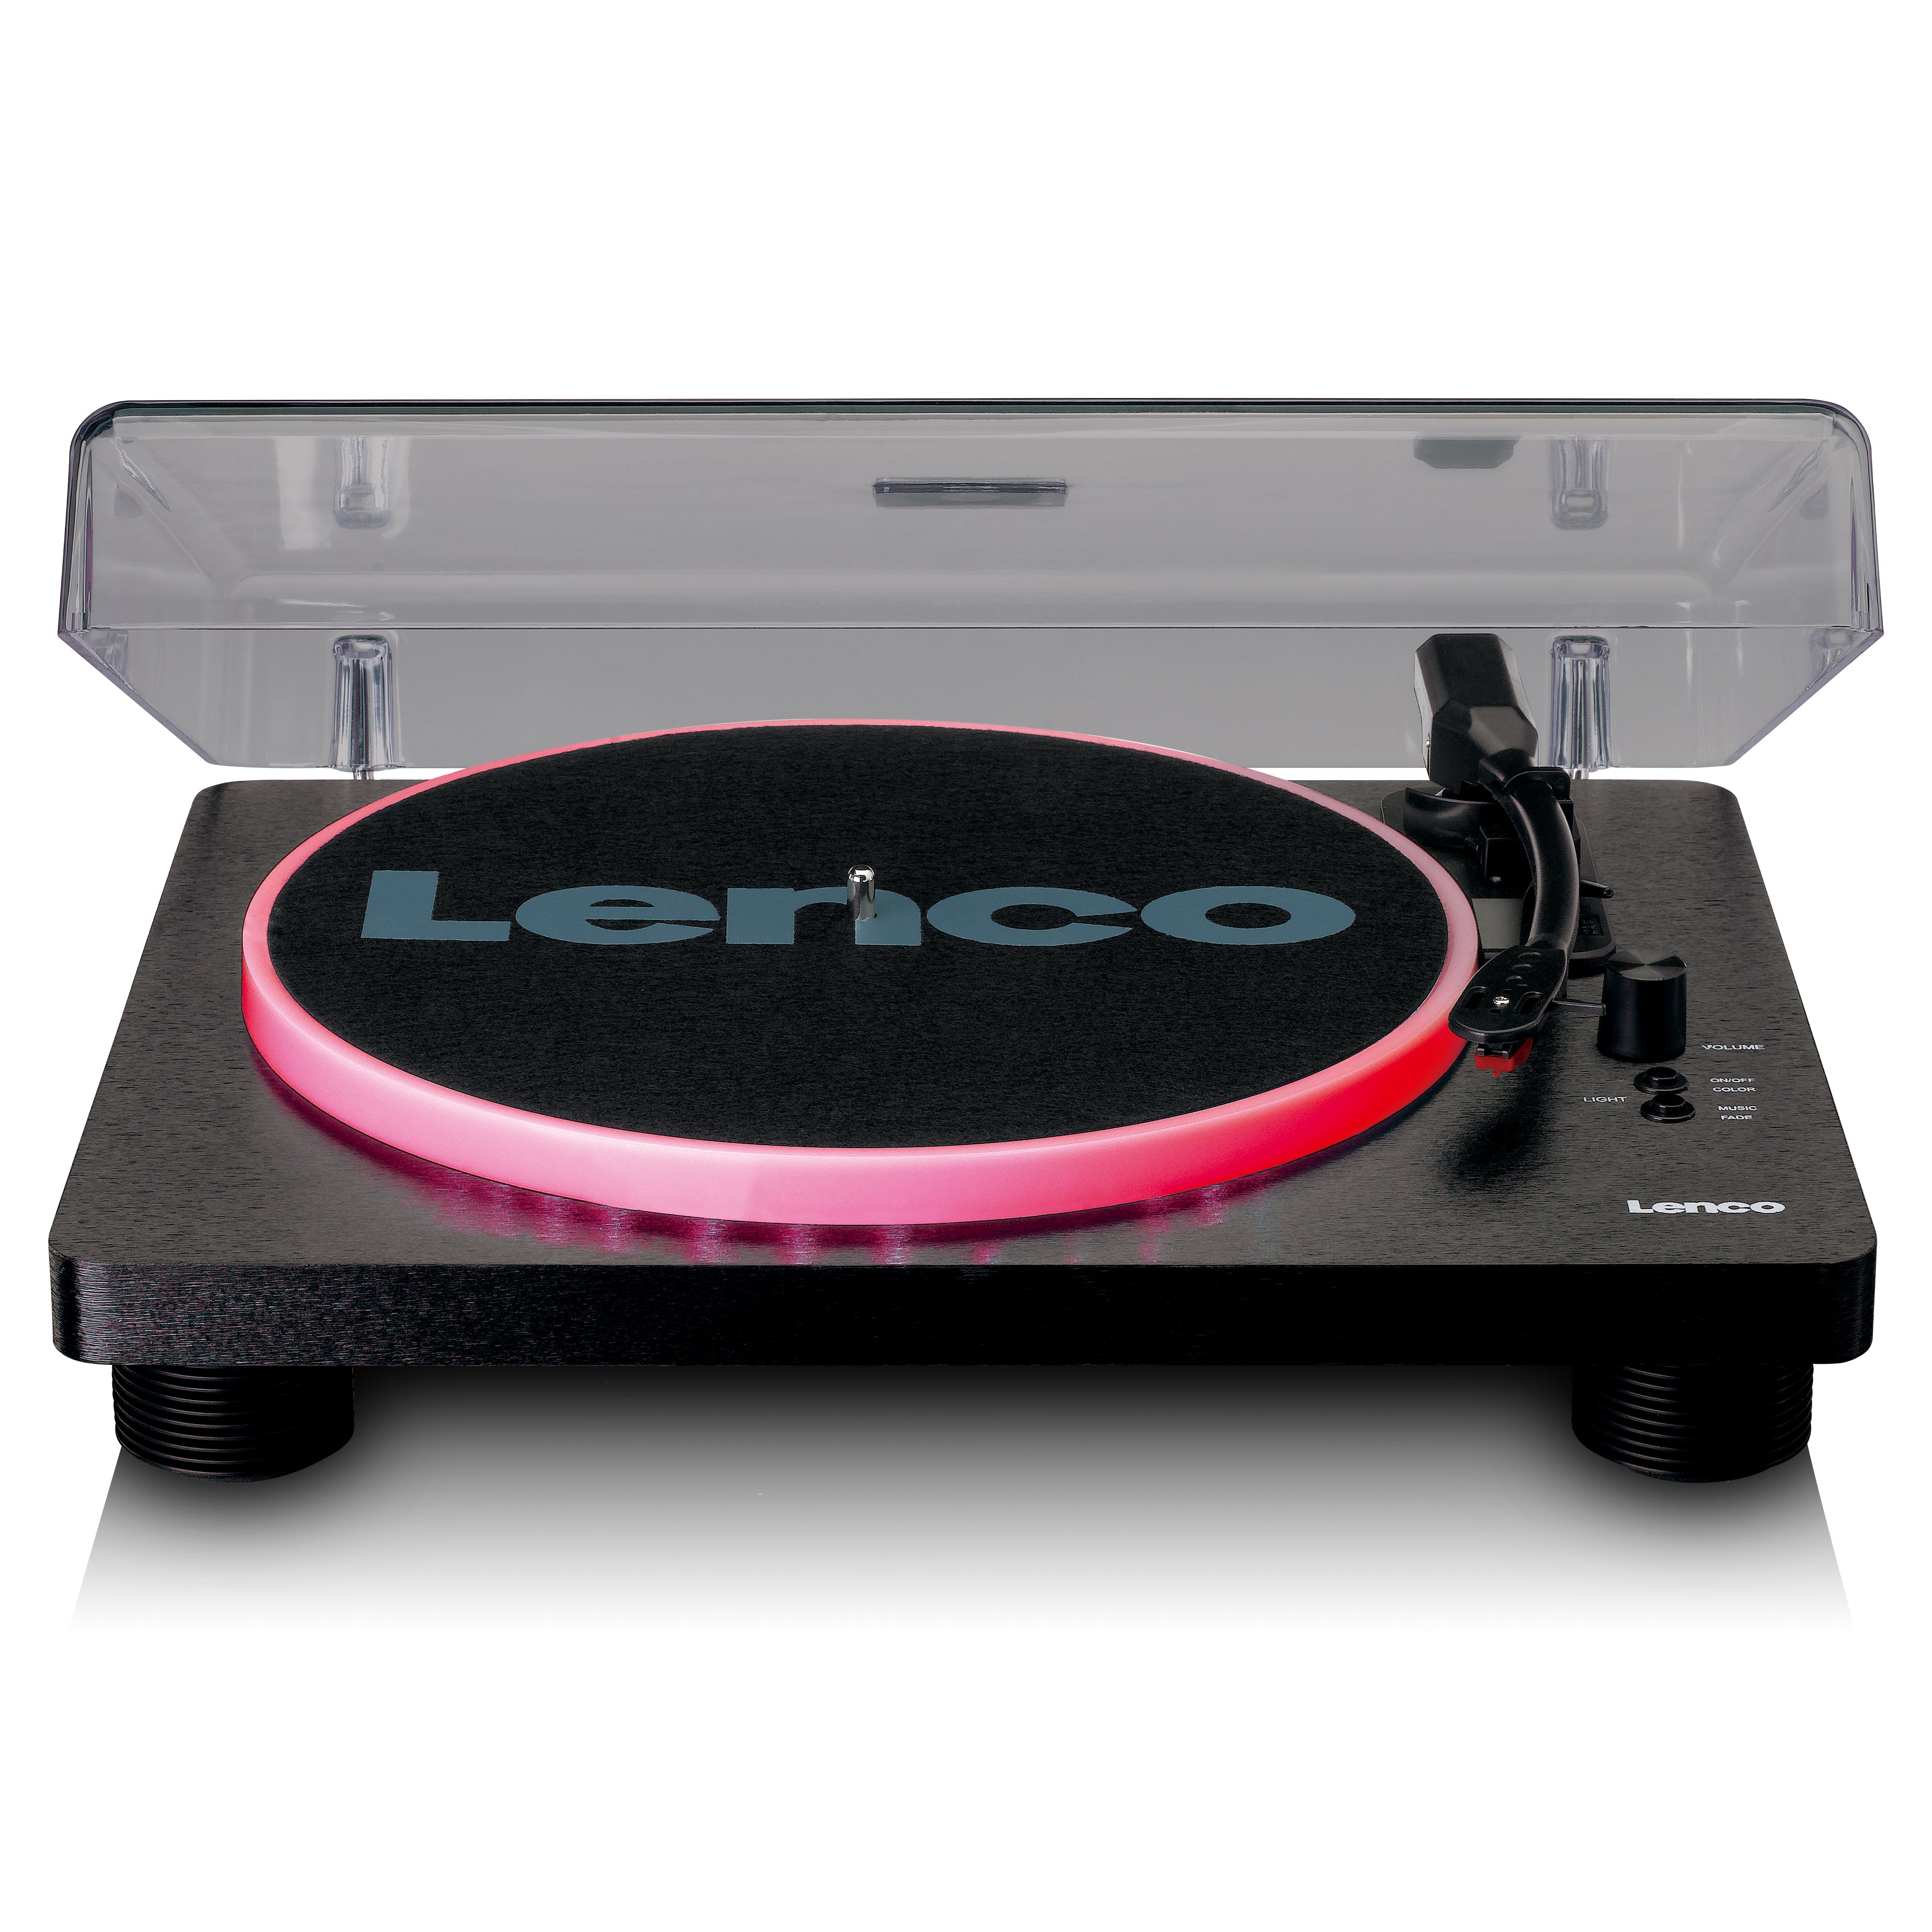 Lenco.de Lenco Webshop – LS-50LED Webshop | offiziellen Jetzt im Offizieller Lenco kaufen? -